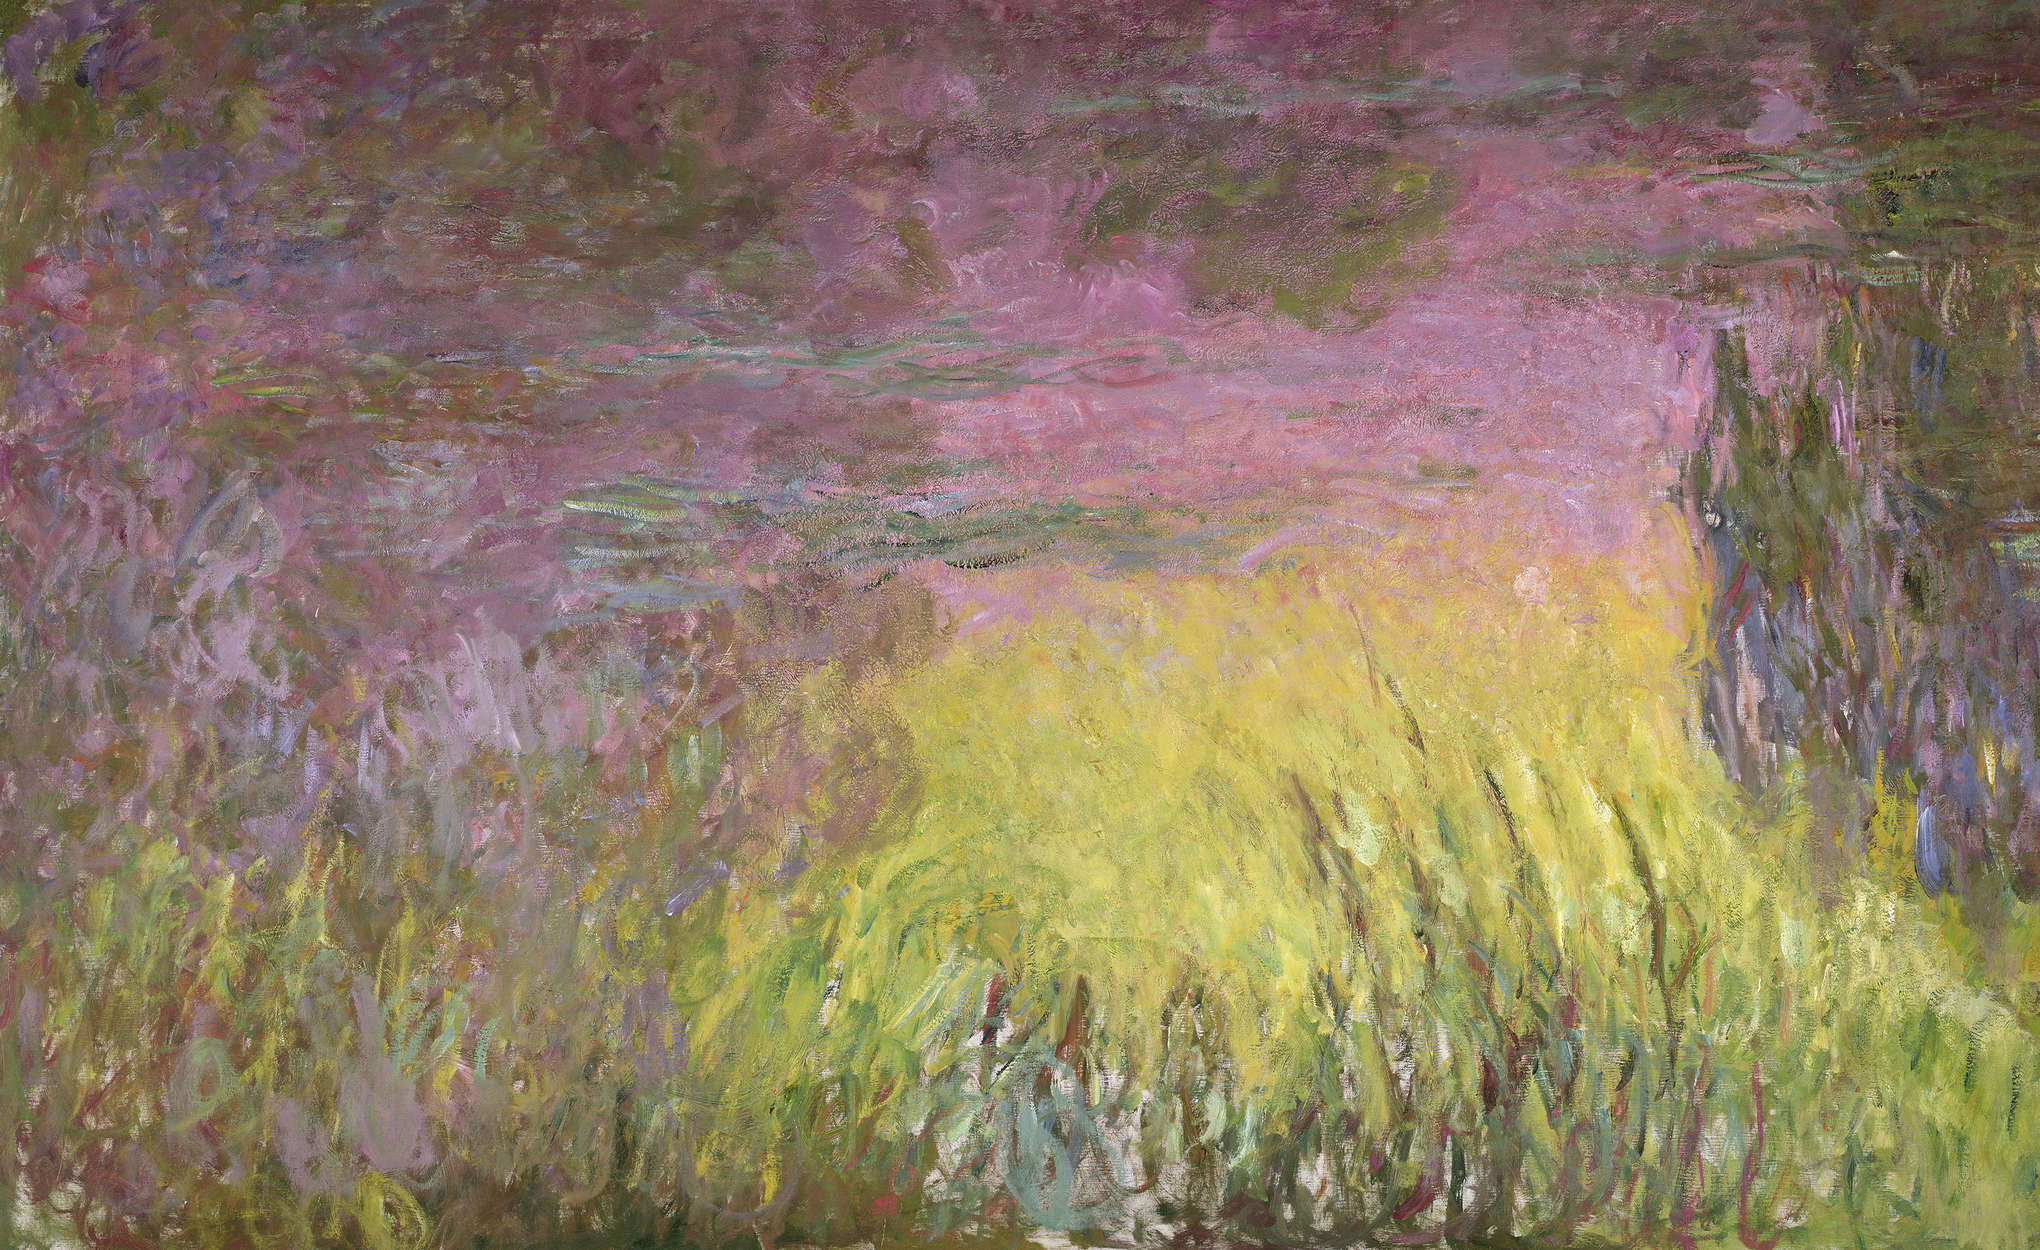             Waterlelies bij zonsondergang" muurschildering van Claude Monet
        